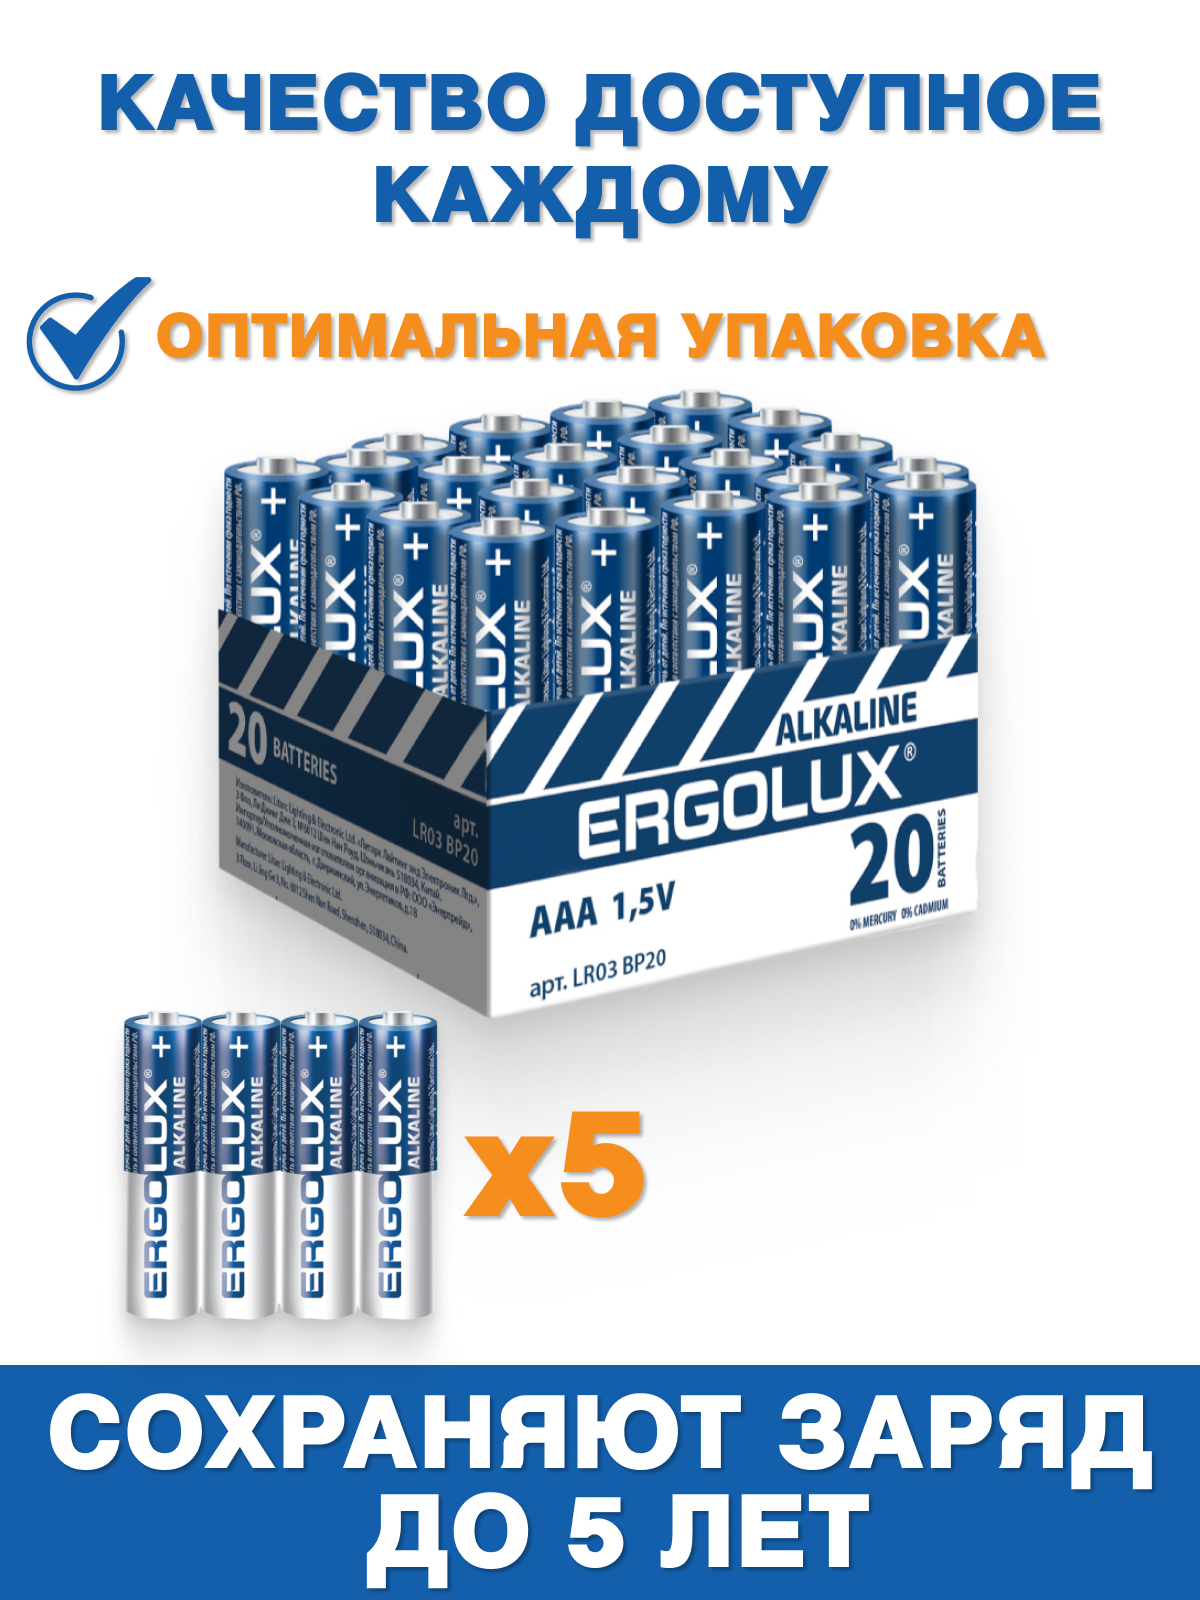 Батарейки ААА Ergolux LR03 Alkaline 1.5В 20 шт в упаковке